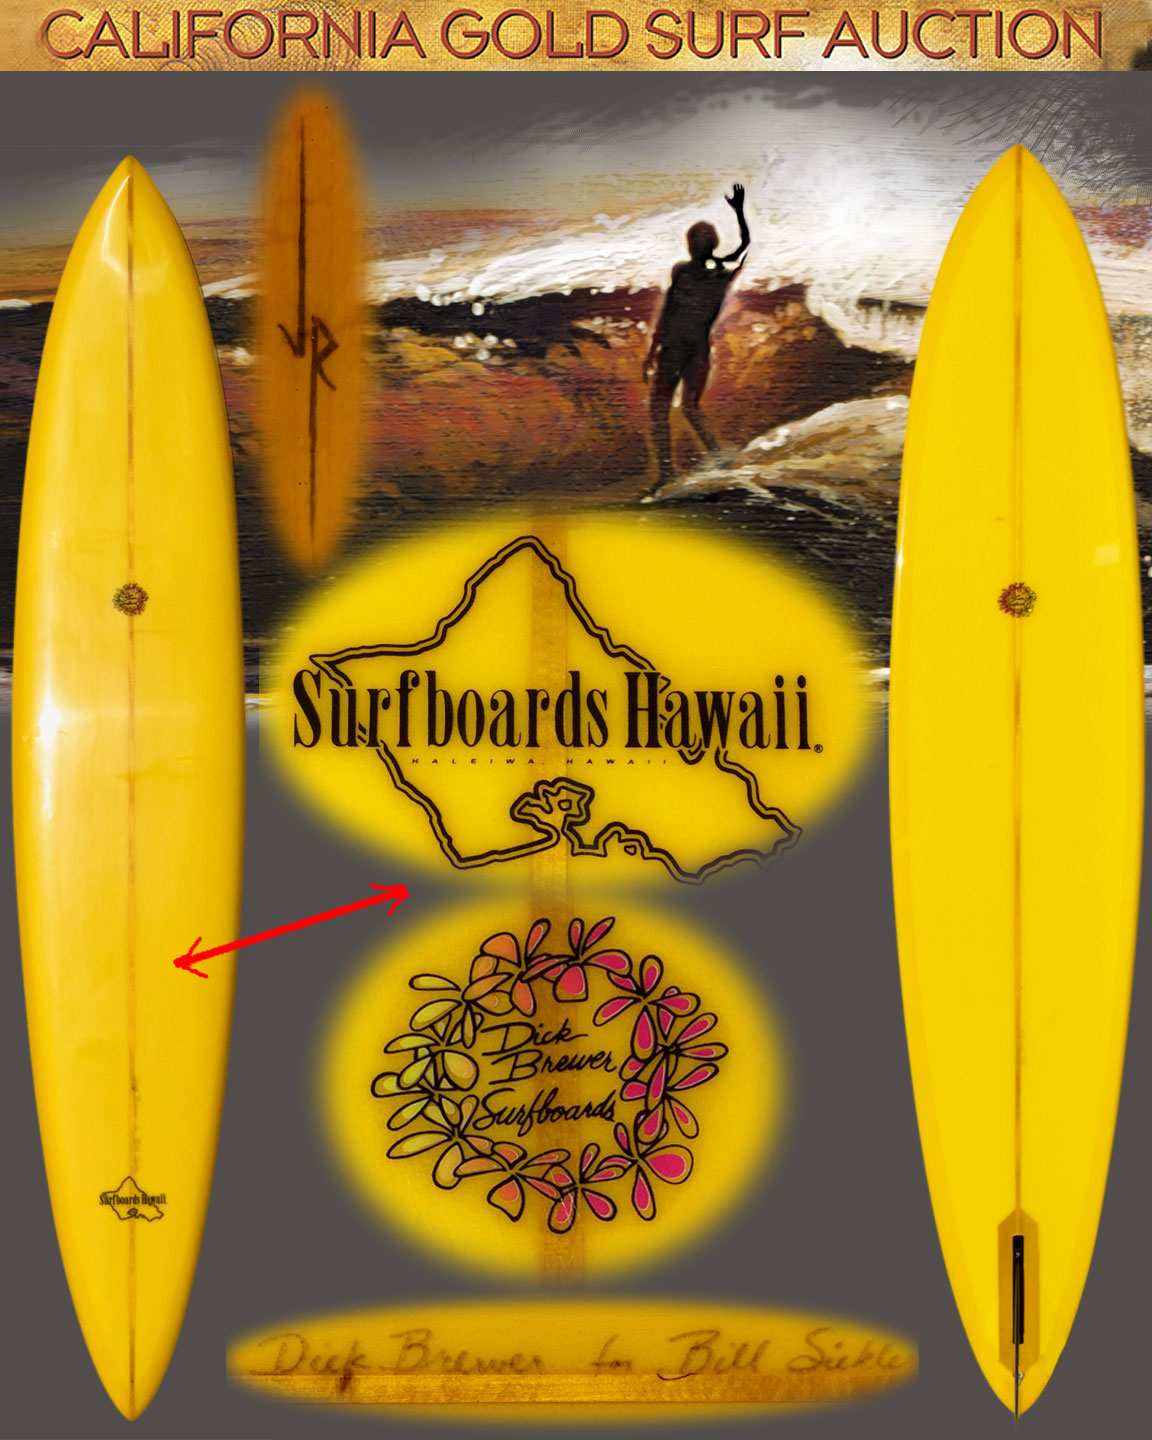 DICK BREWER SUNSET BEACH GUN | California Gold Surf Auction